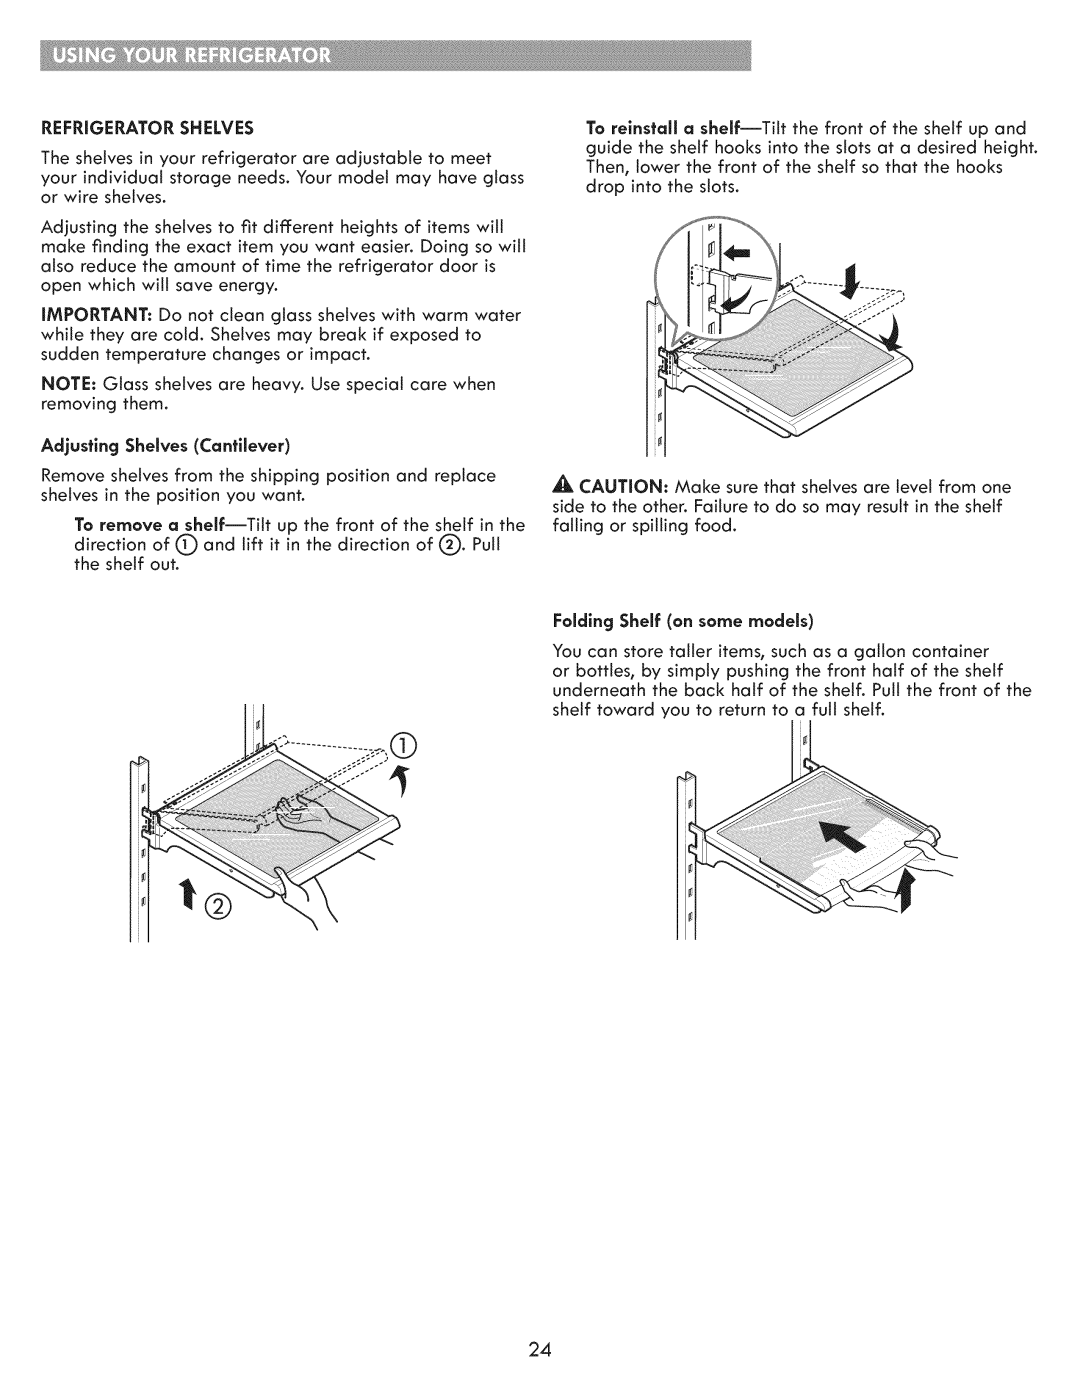 Kenmore 795.7103 manual Adjusting Shelves Cantilever, Foldlng Shelf on some models 